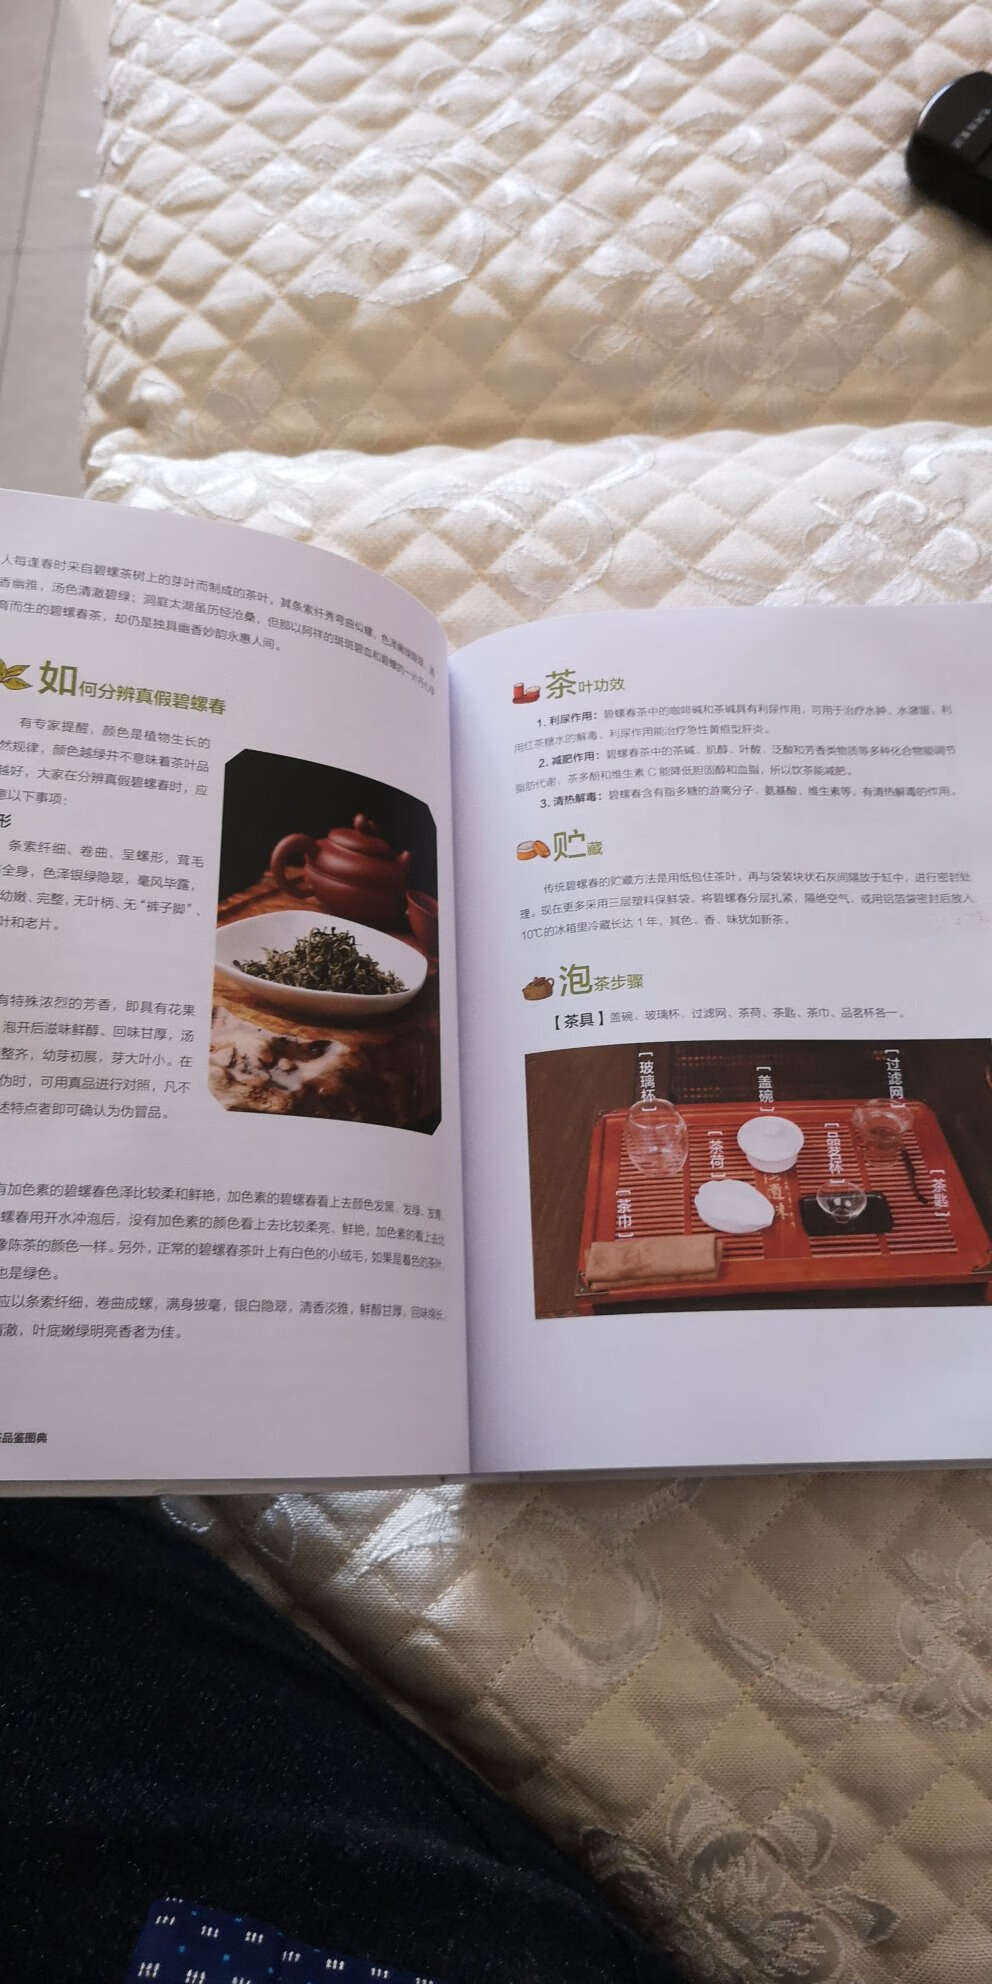 印刷质量非常好，包装非常精美，内容非常详细。是一本对茶艺茶道喝茶的知识的介绍，非常完美的一本书。